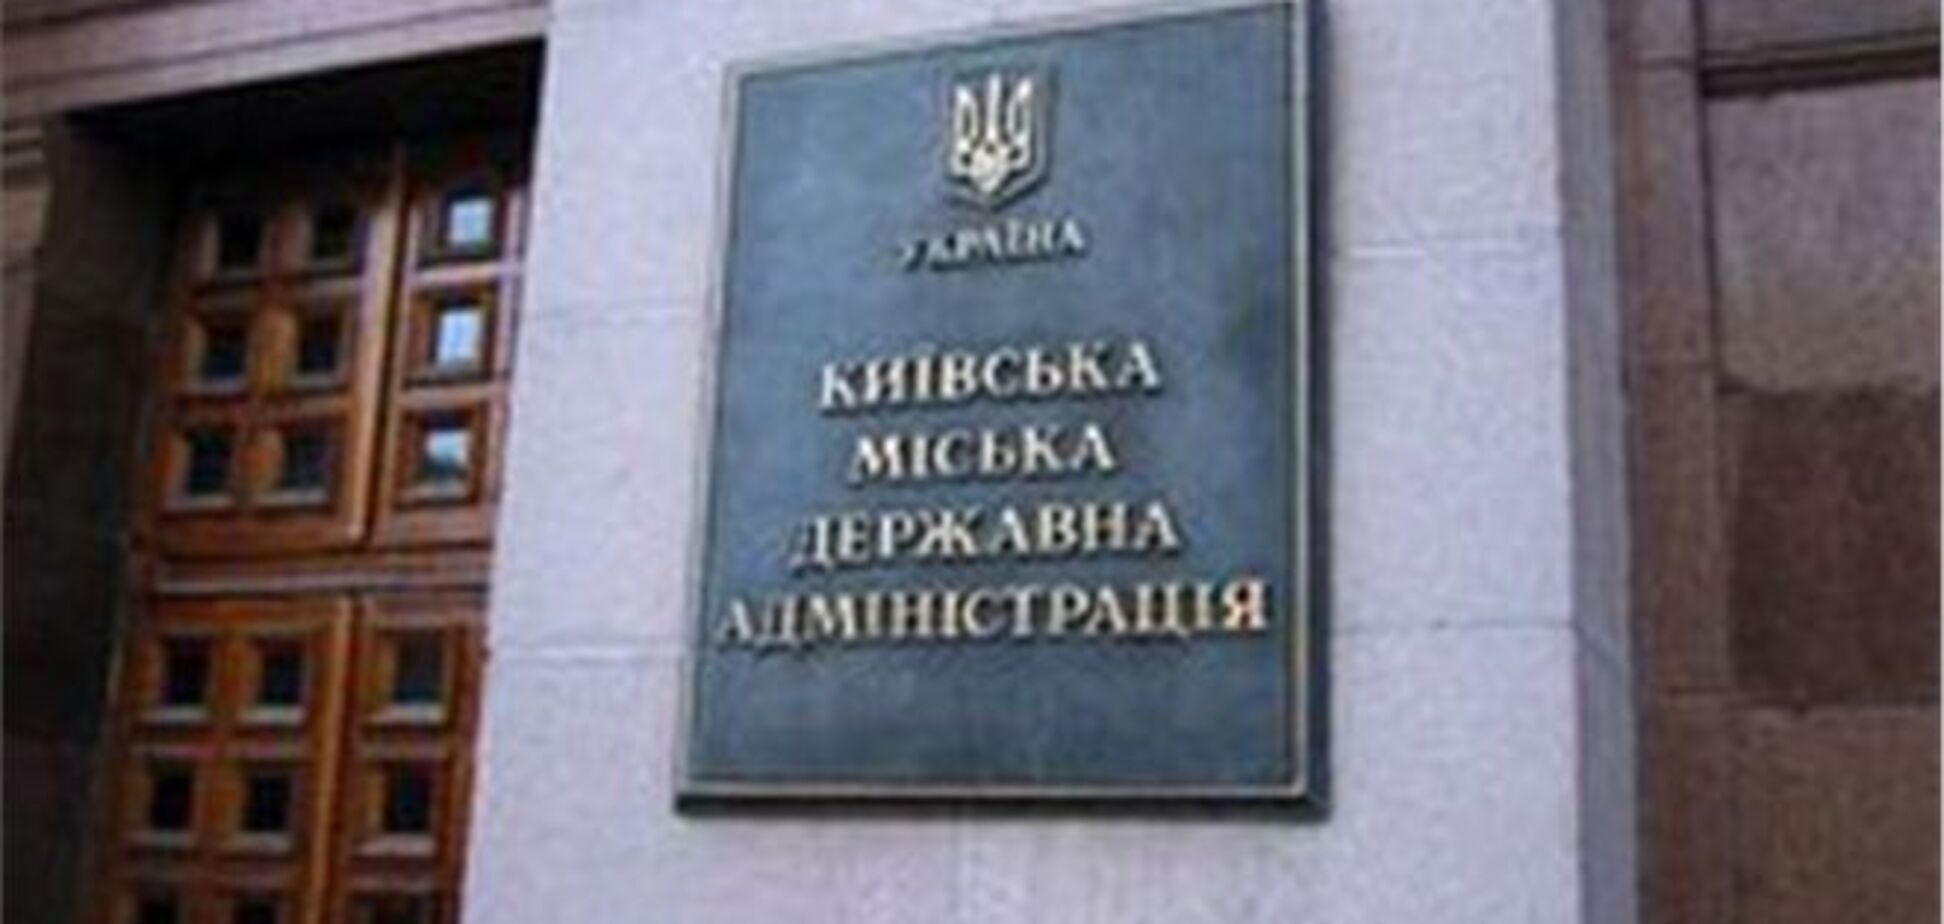 Главу регистрационной службы в Киеве требуют уволить